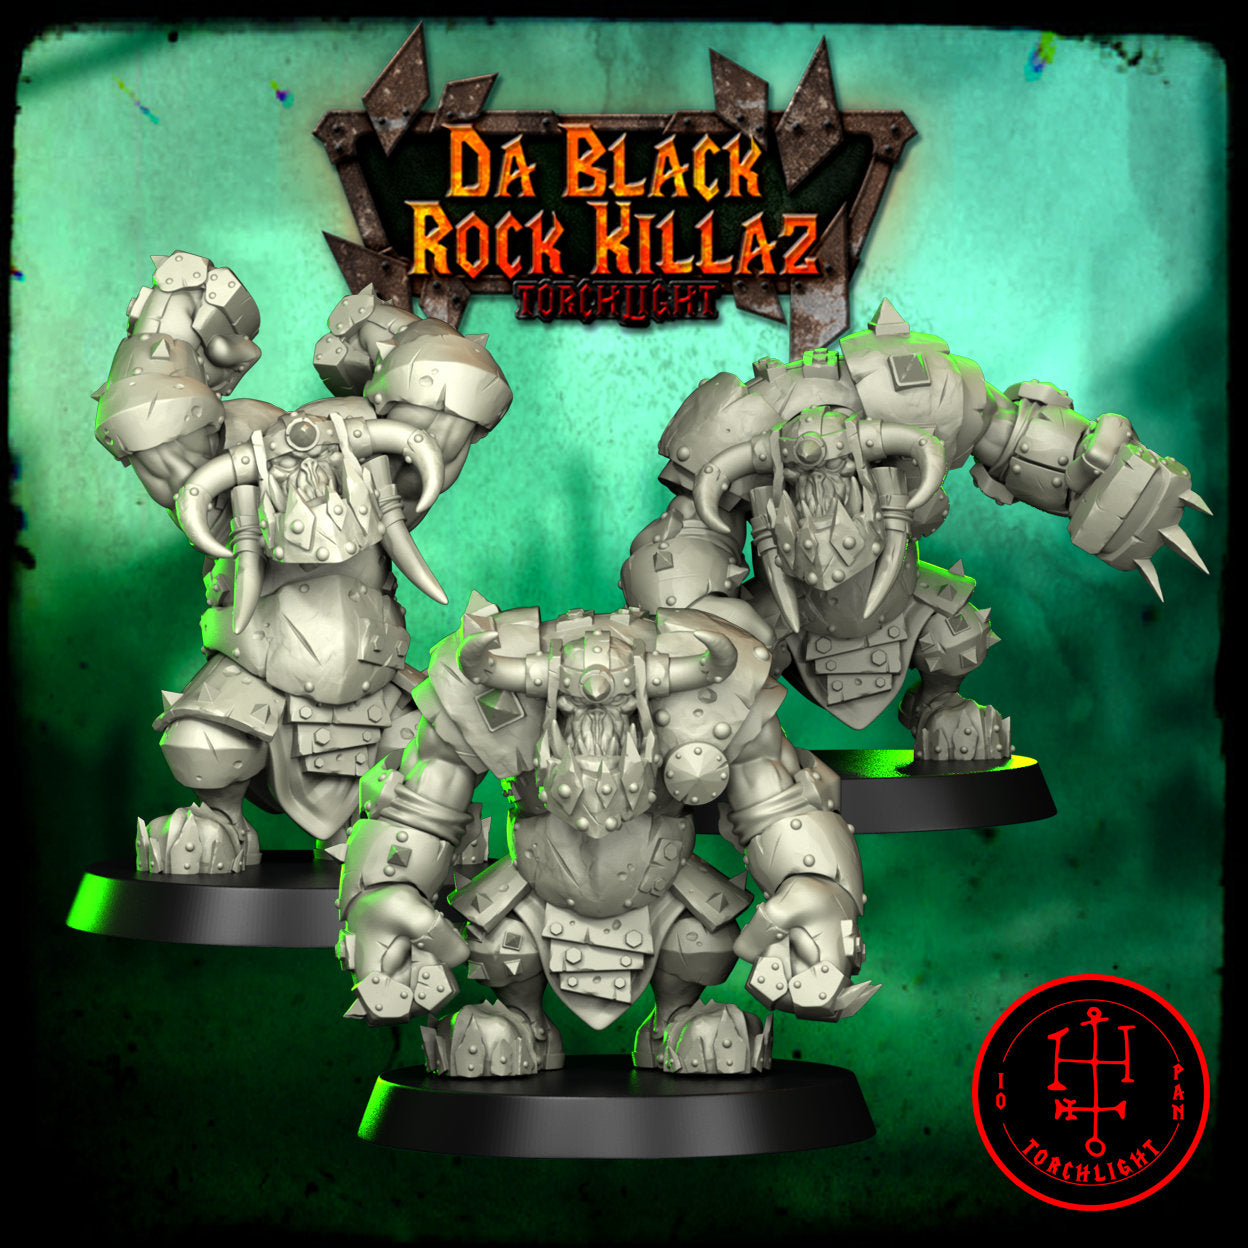 Da Black Rock Killas - Equipo de fútbol de fantasía Obsidian Orc - 15 jugadores - Modelos de antorchas